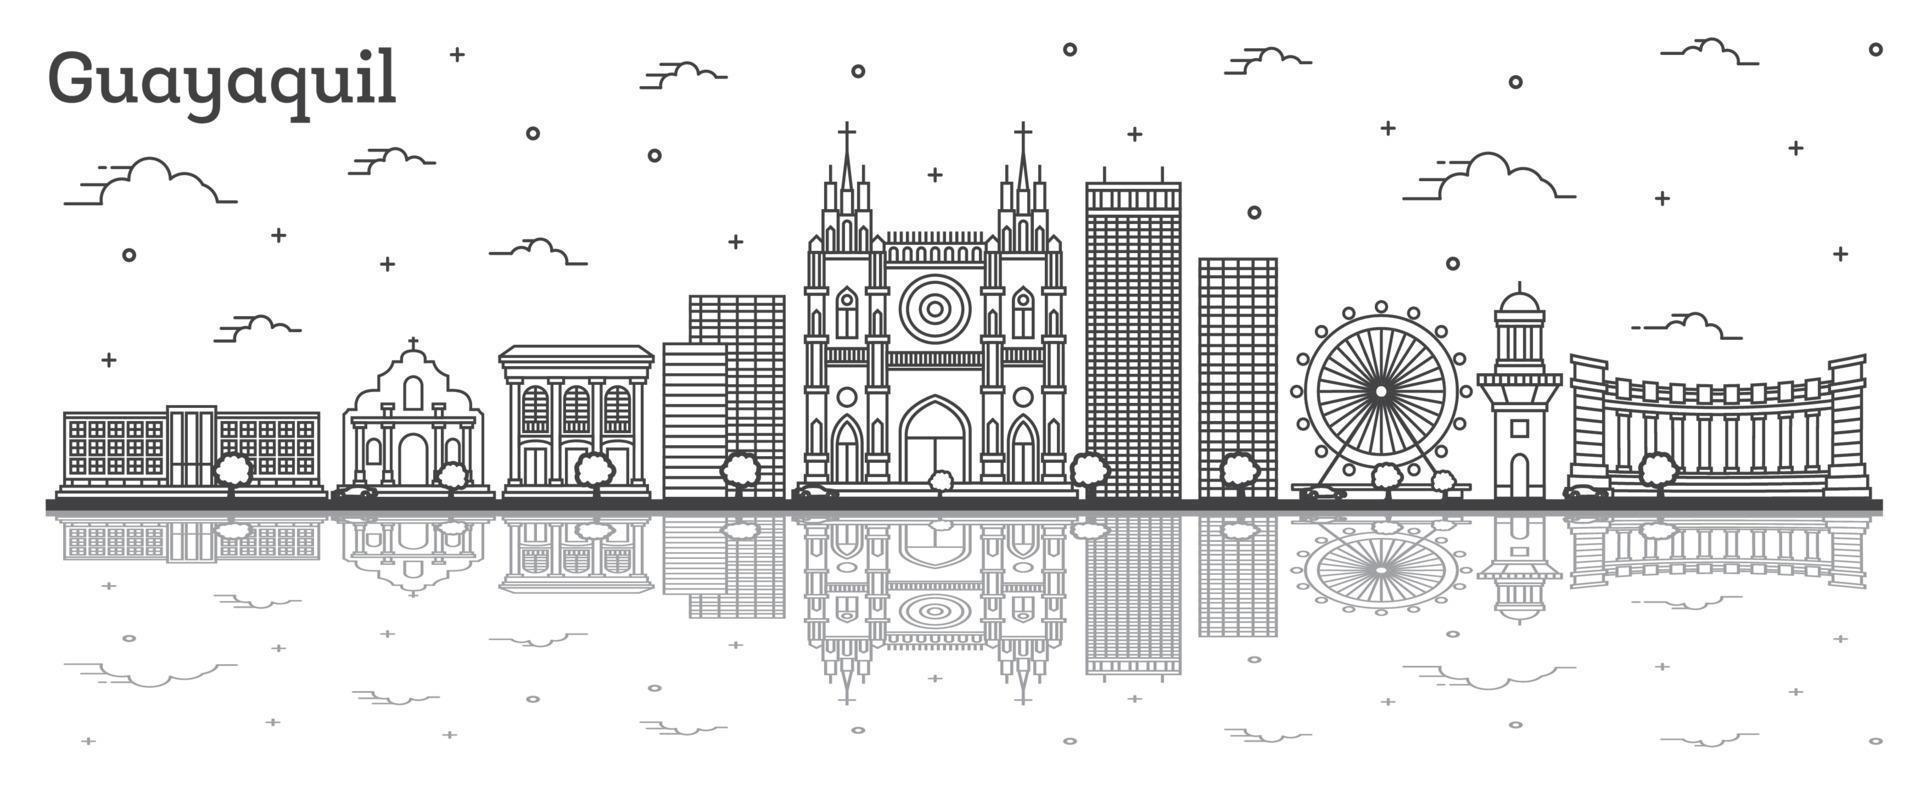 contours guayaquil equateur city skyline avec des bâtiments historiques et des reflets isolés sur blanc. vecteur